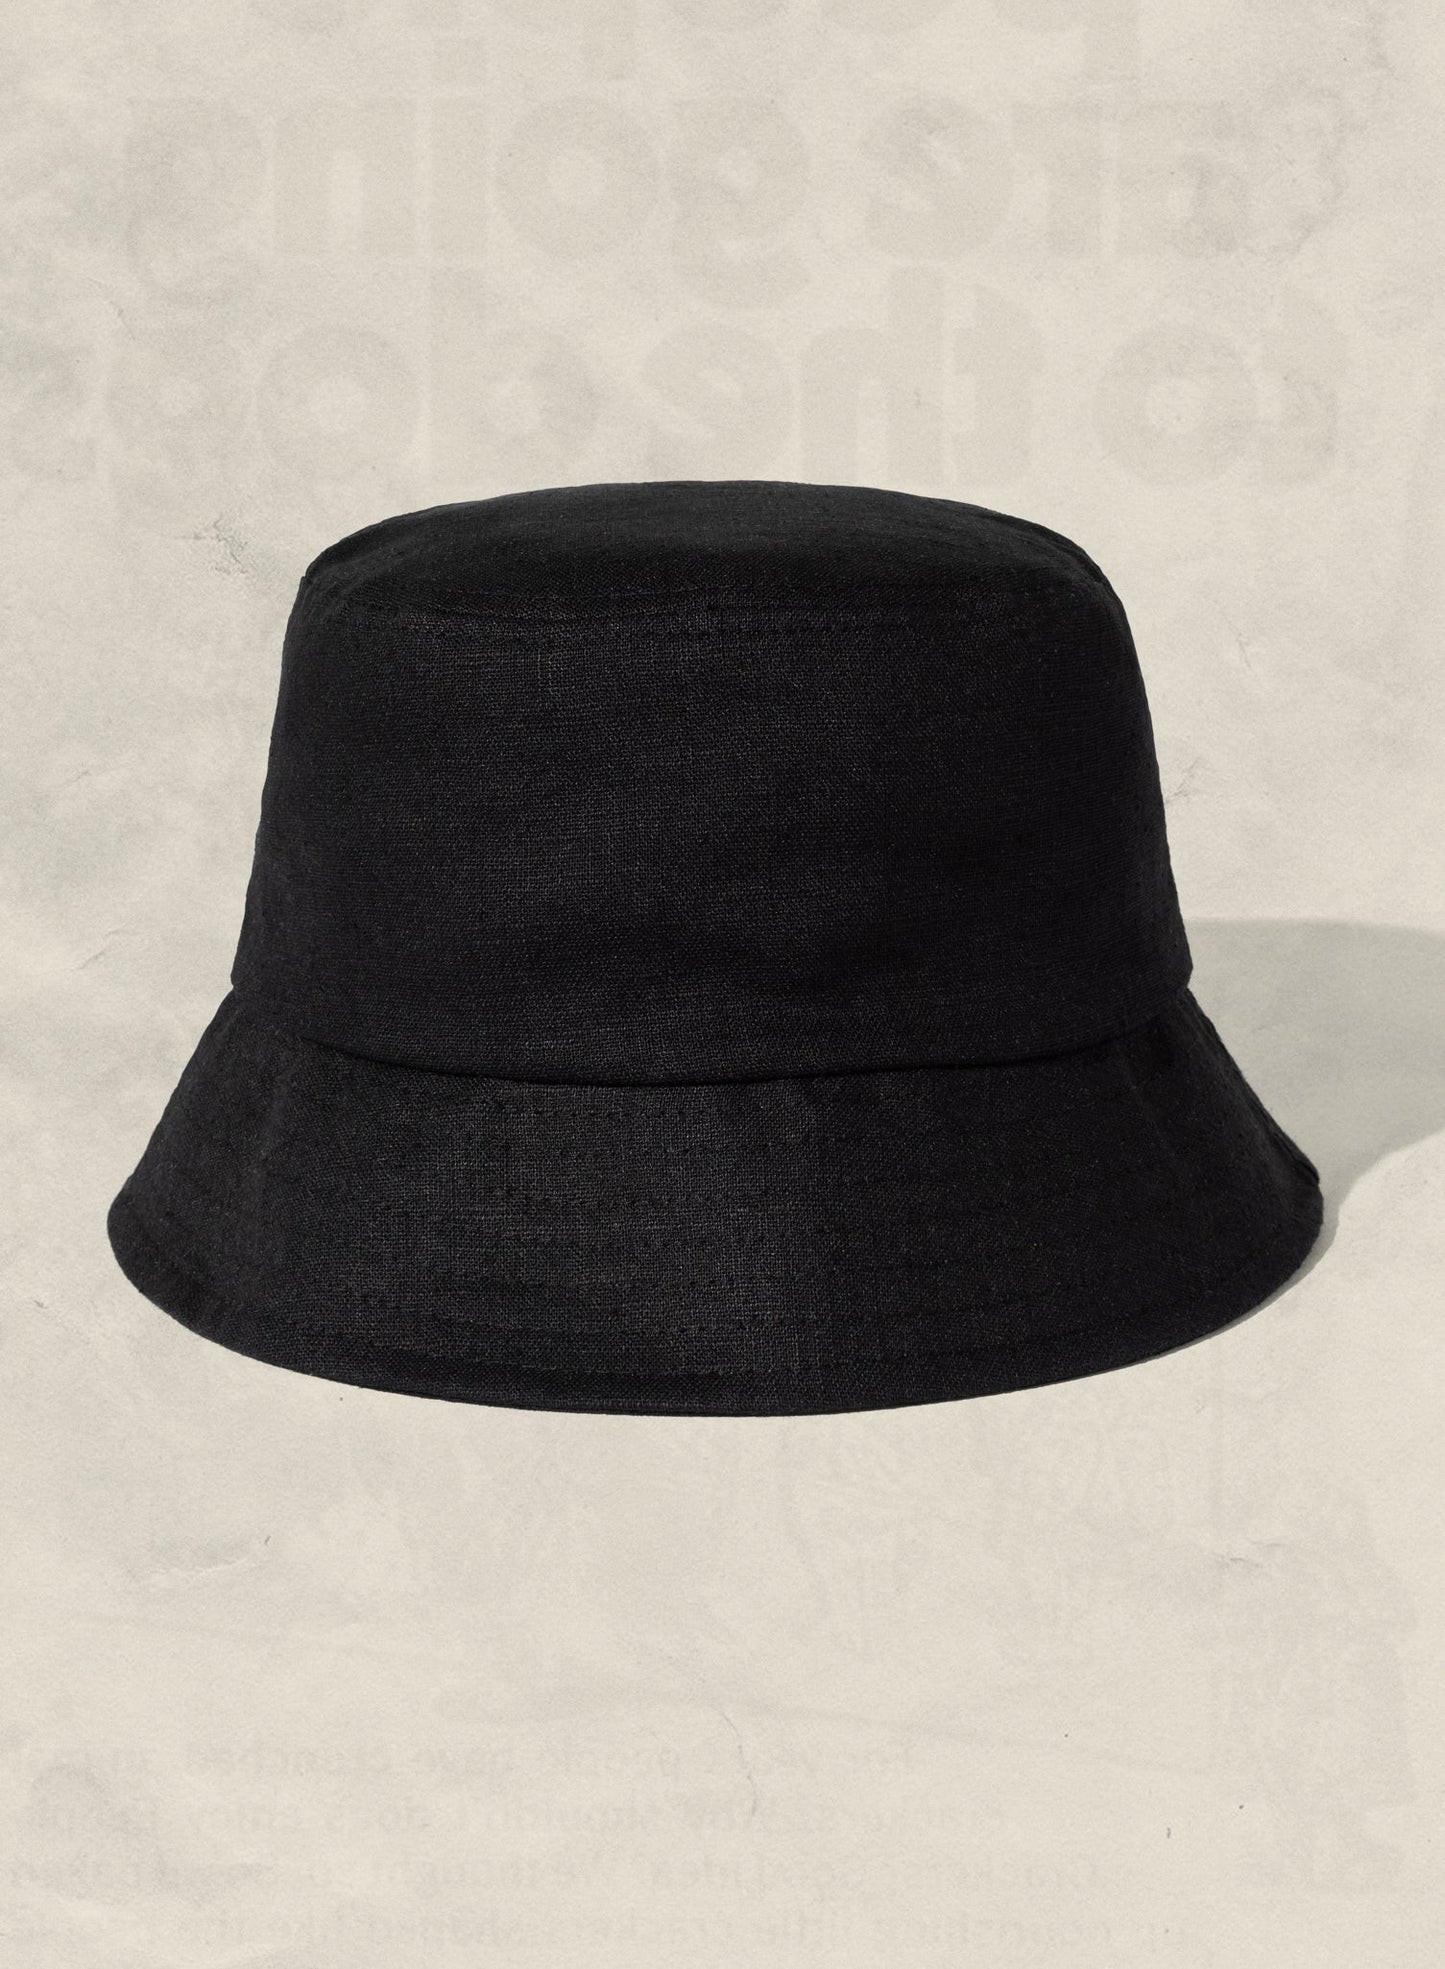 Weld Mfg Hemp Bucket Hat - Vintage Inspired Beach Sun Hat - Black